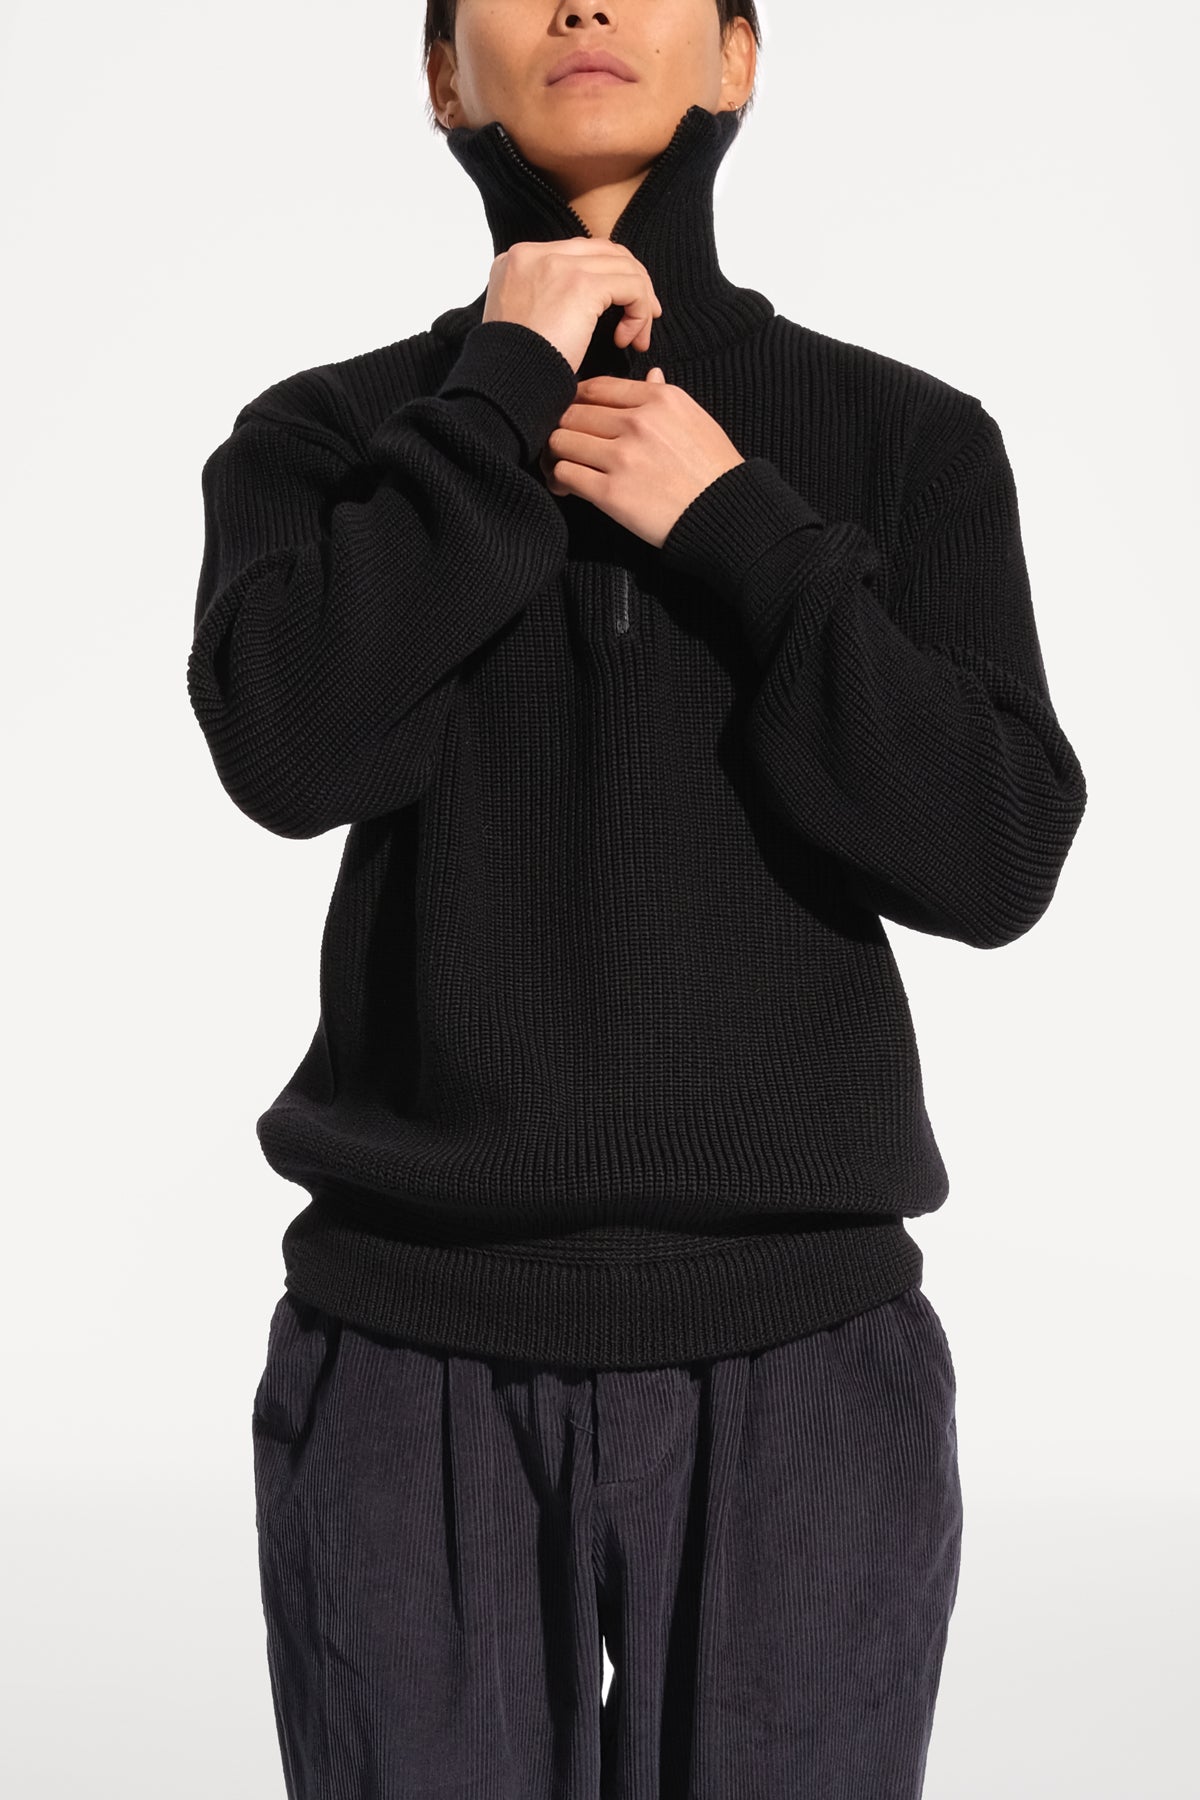 oftt - 04 - half-zip heavy knit  jumper - black - merino wool - image 2